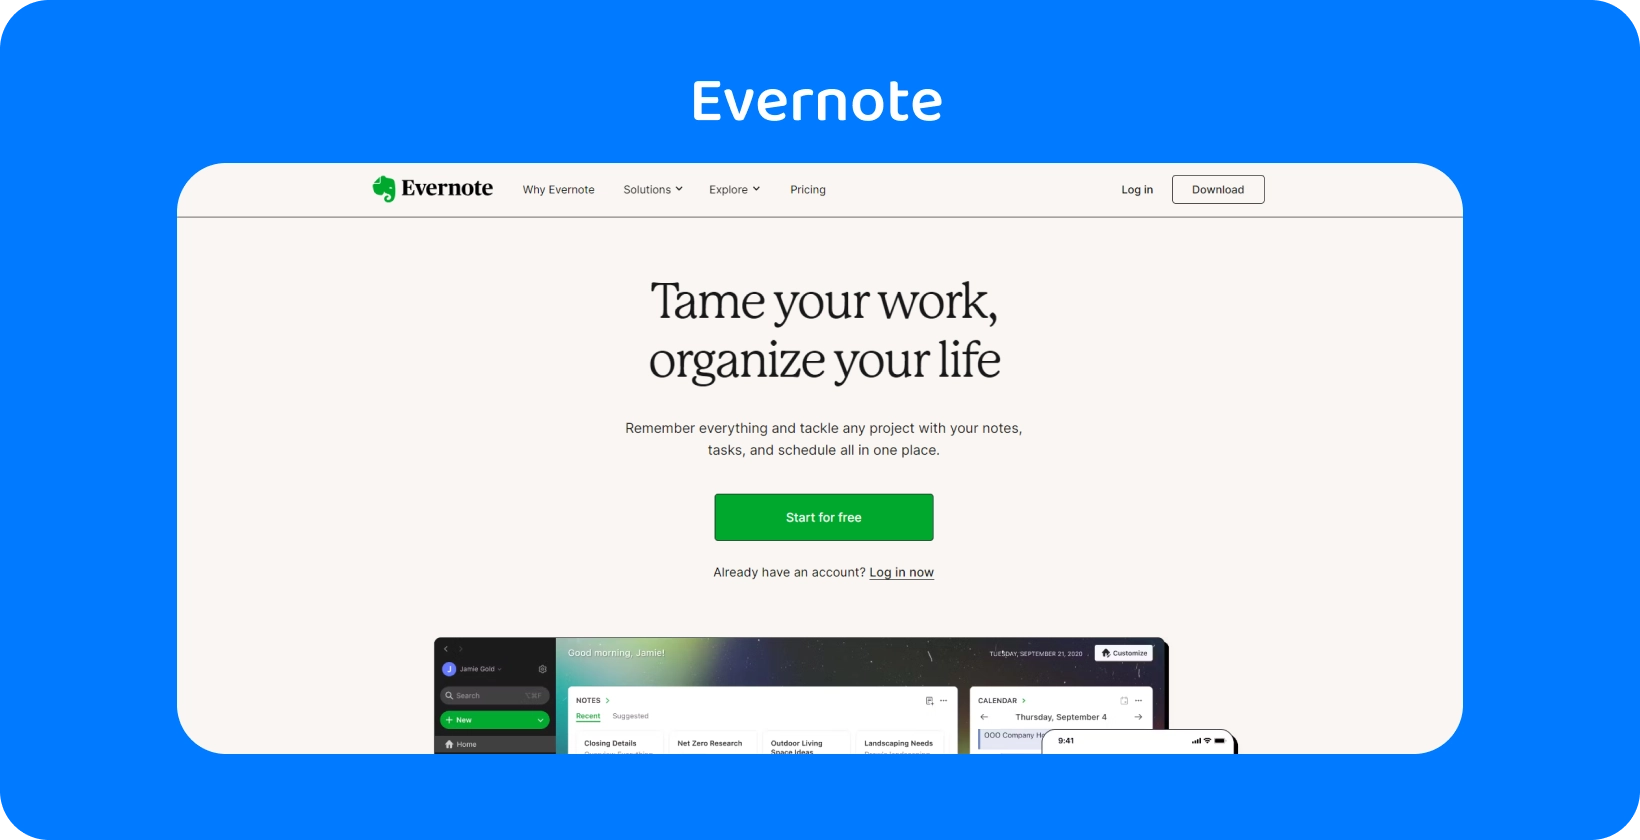 Evernote ana sayfası, uygulamamızın avukatlar için toplantı transkripsiyonuna benzer şekilde, organizasyon özelliklerini vurgular.